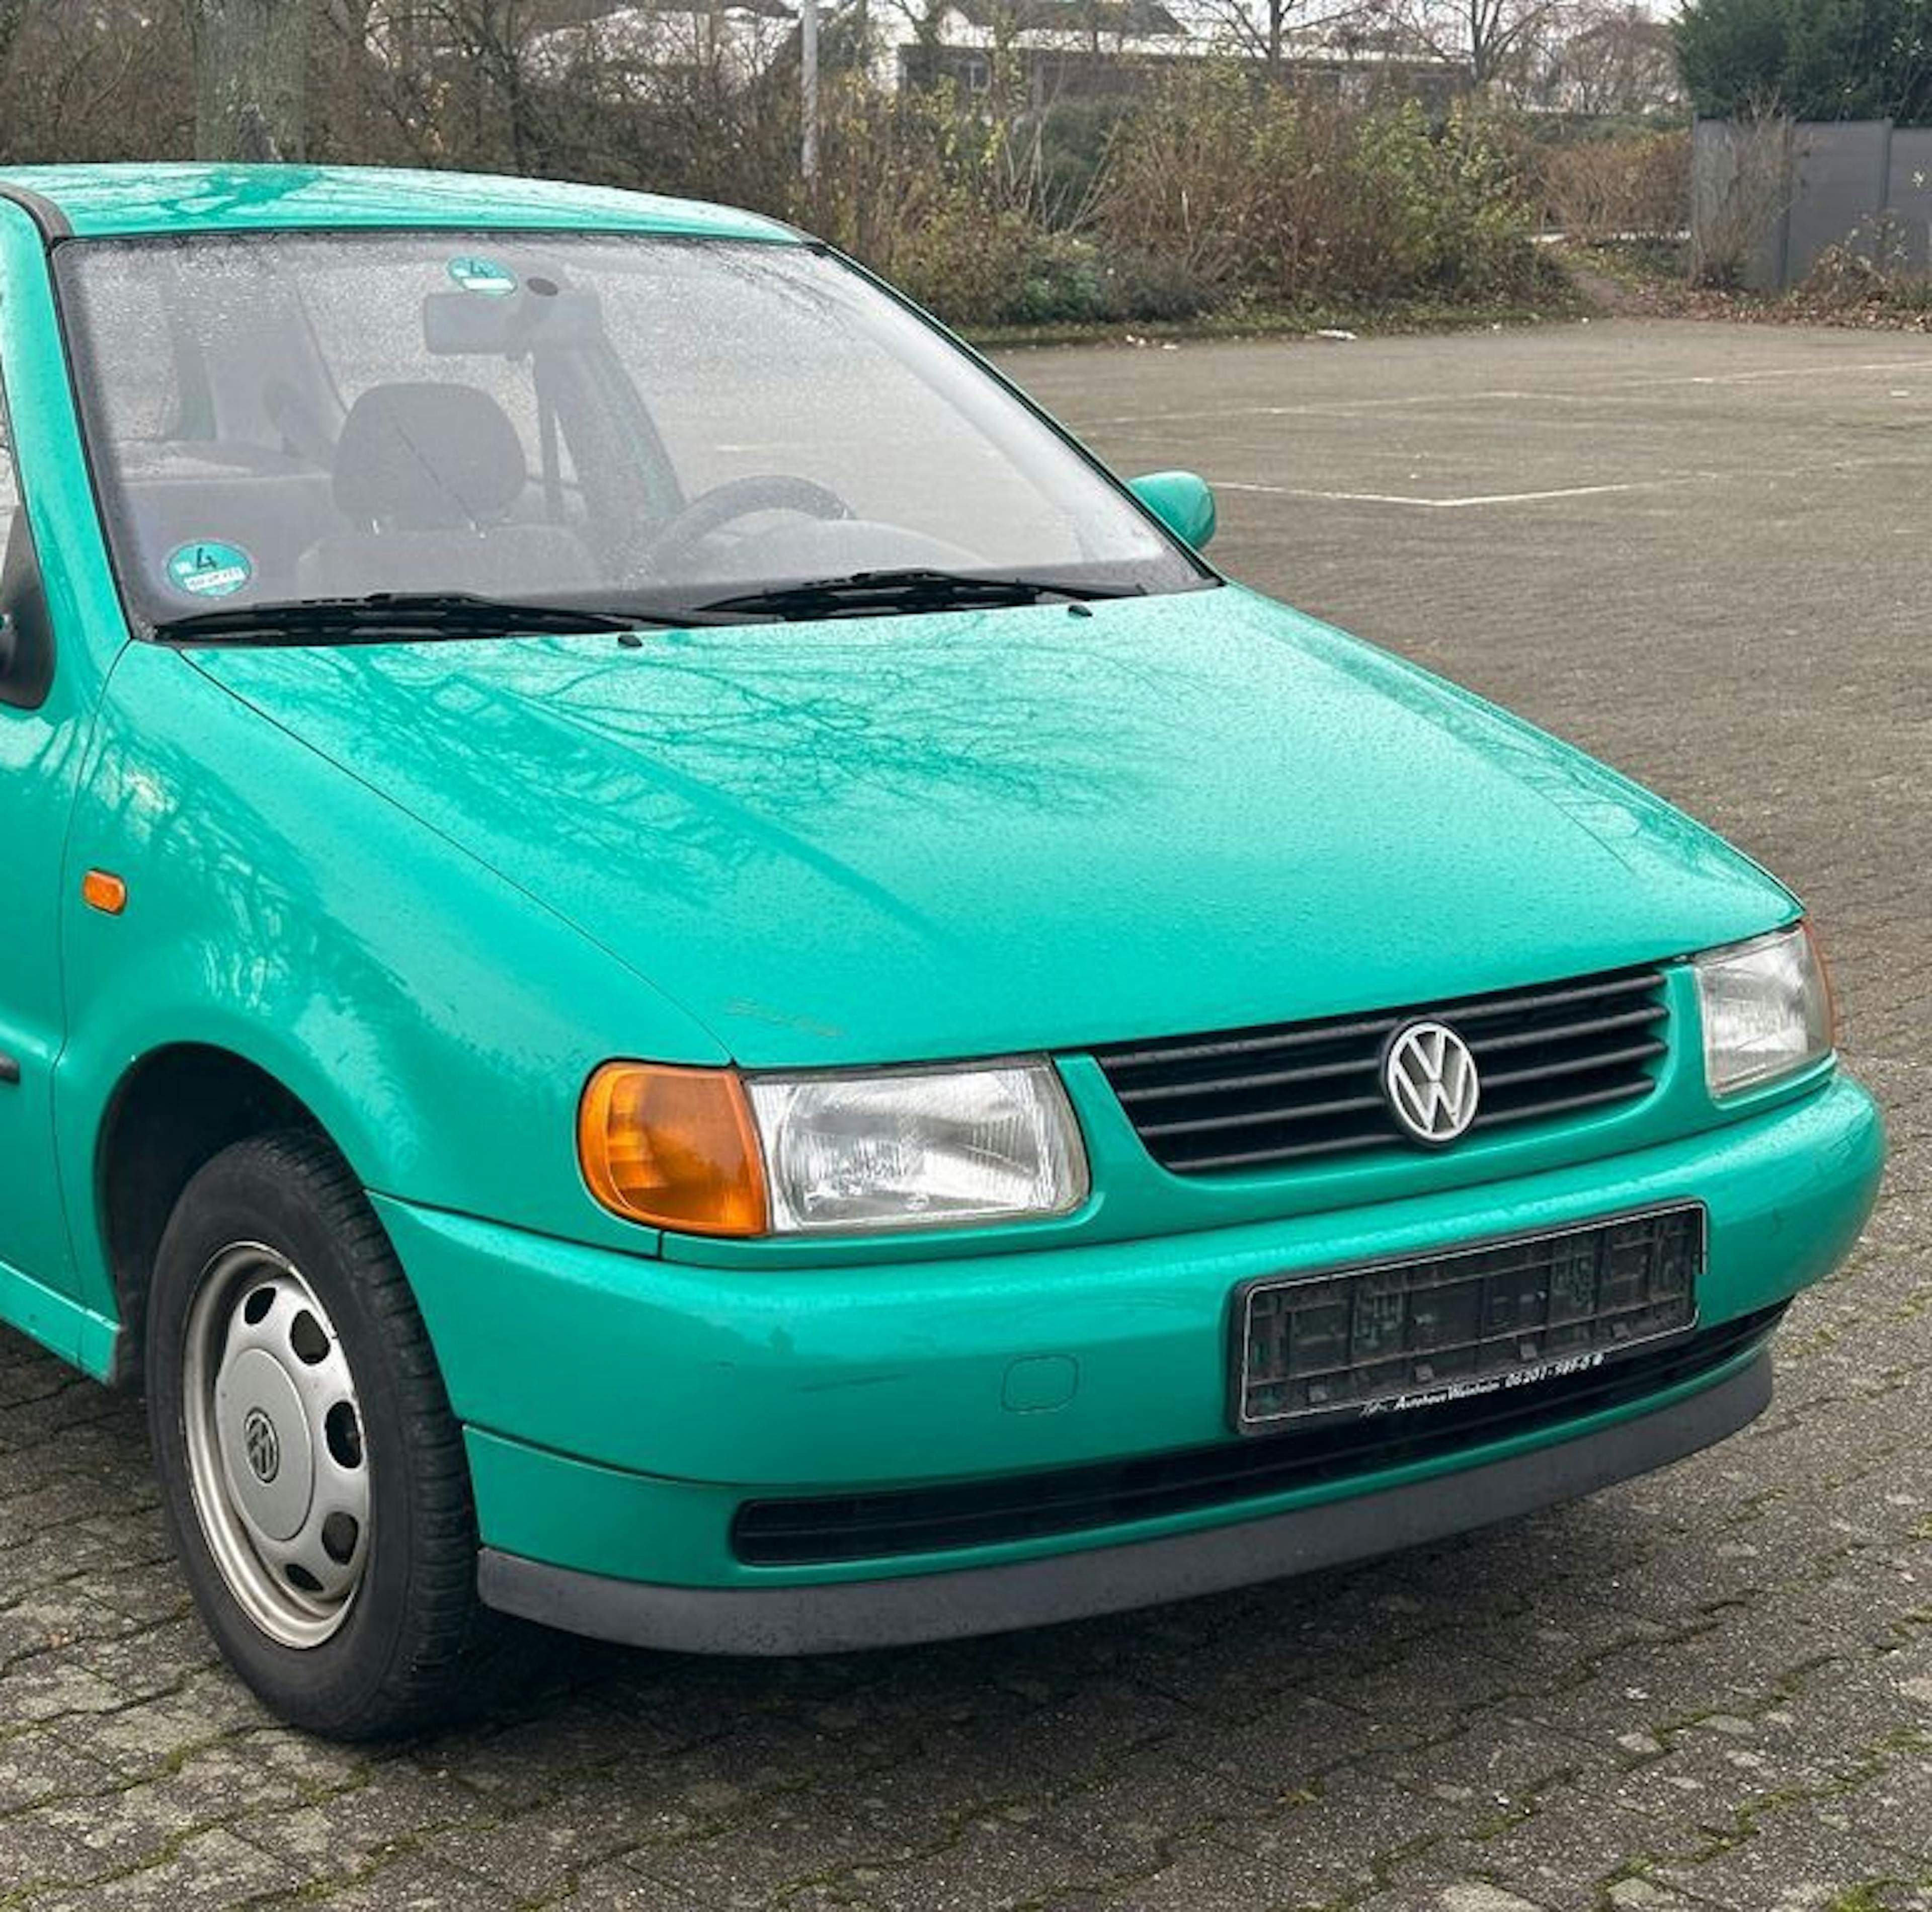 VW Polo in grün